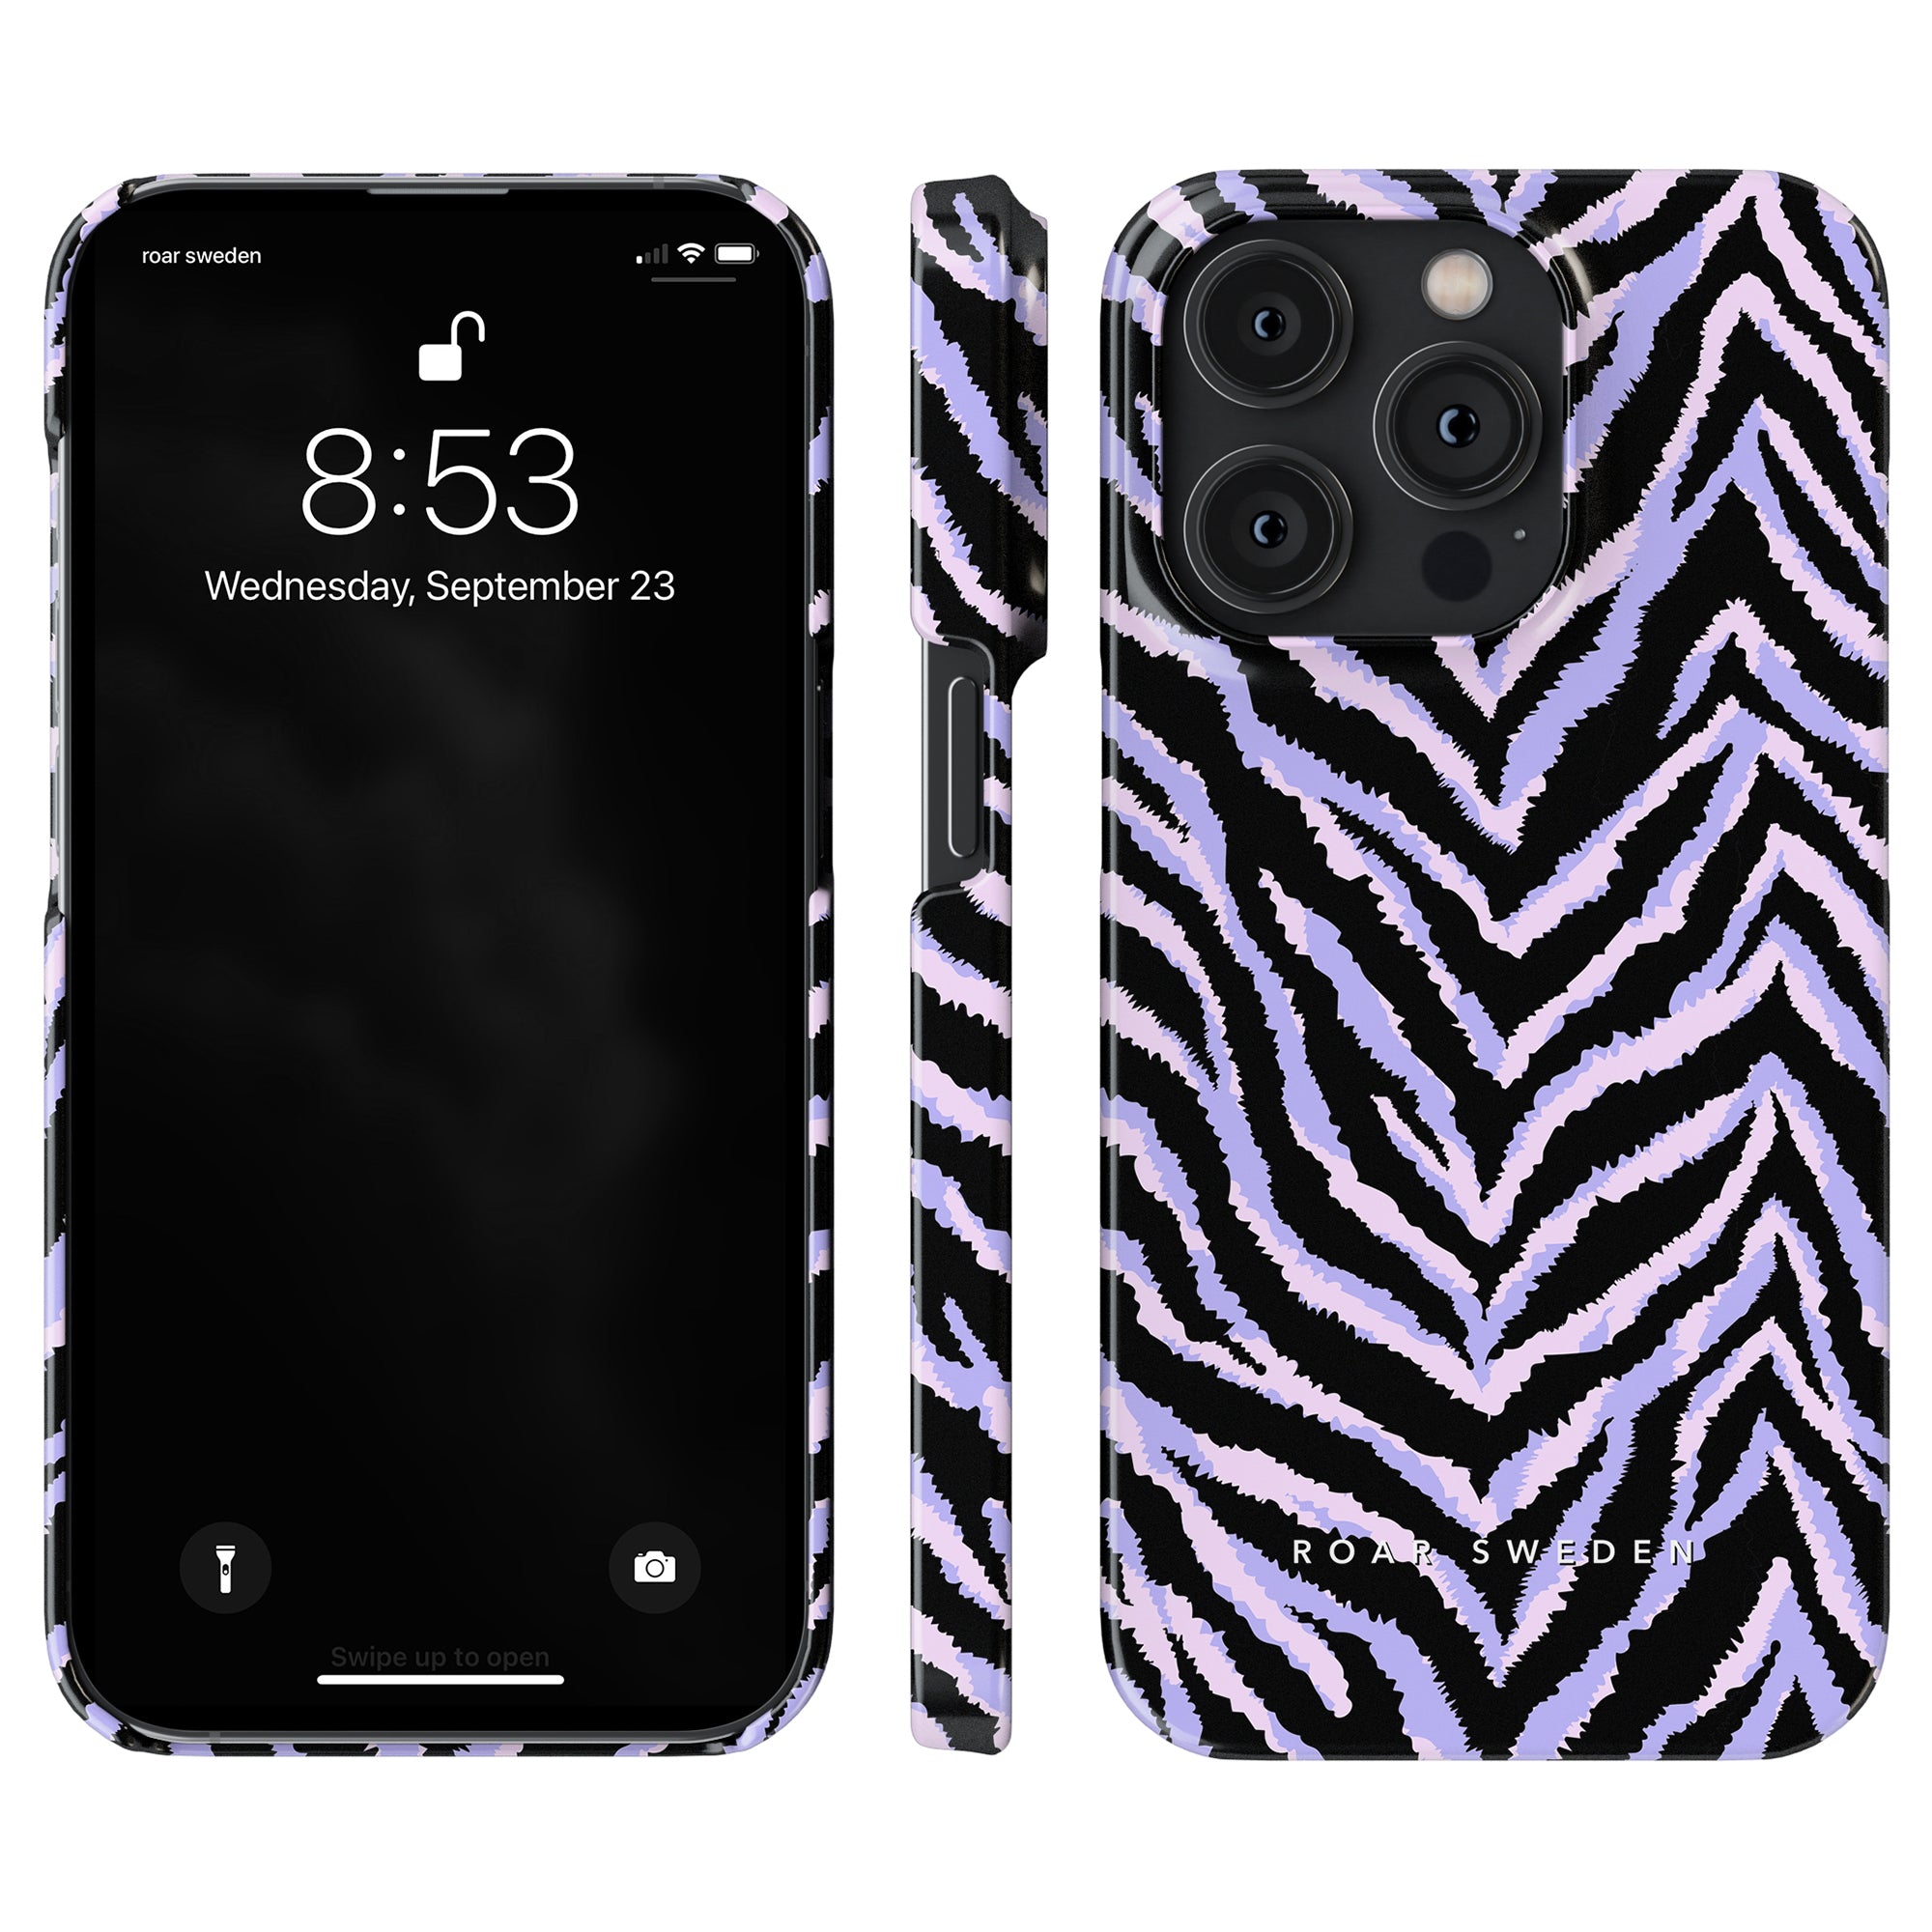 Förbättra din iPhone 11 med det snygga Zebra - Slim Case från Roar Sweden. Detta smartphonefodral har en trendig design med zebratryck som ger en touch av vildhet till din enhet.